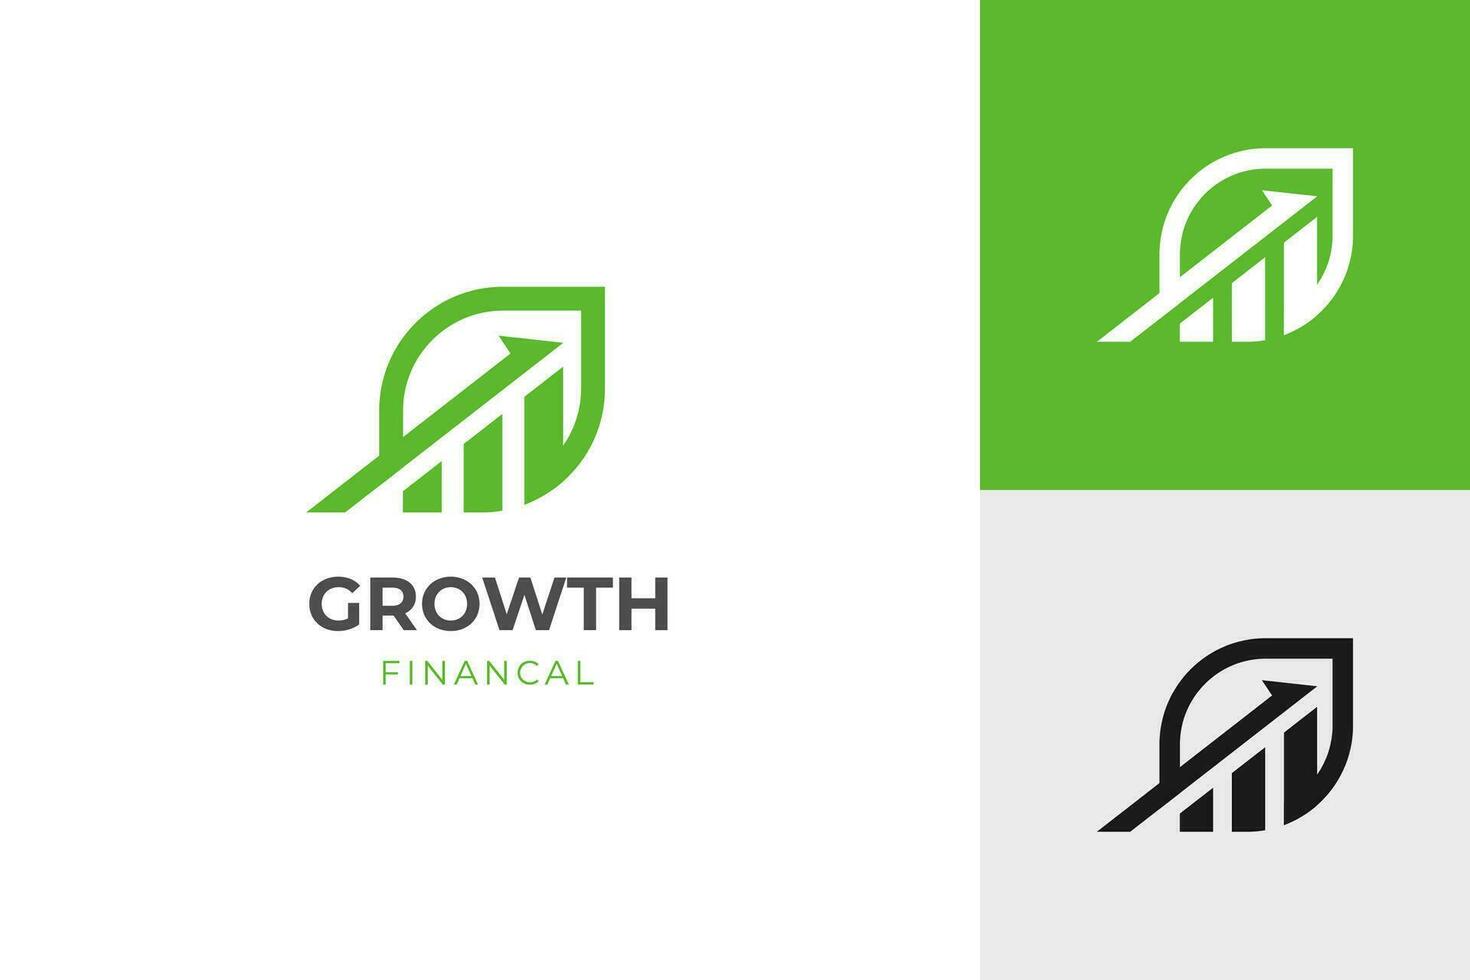 finansiell tillväxt upp logotyp ikon design med blad och pil kombinerad för ekonomi, finansiera element symbol vektor